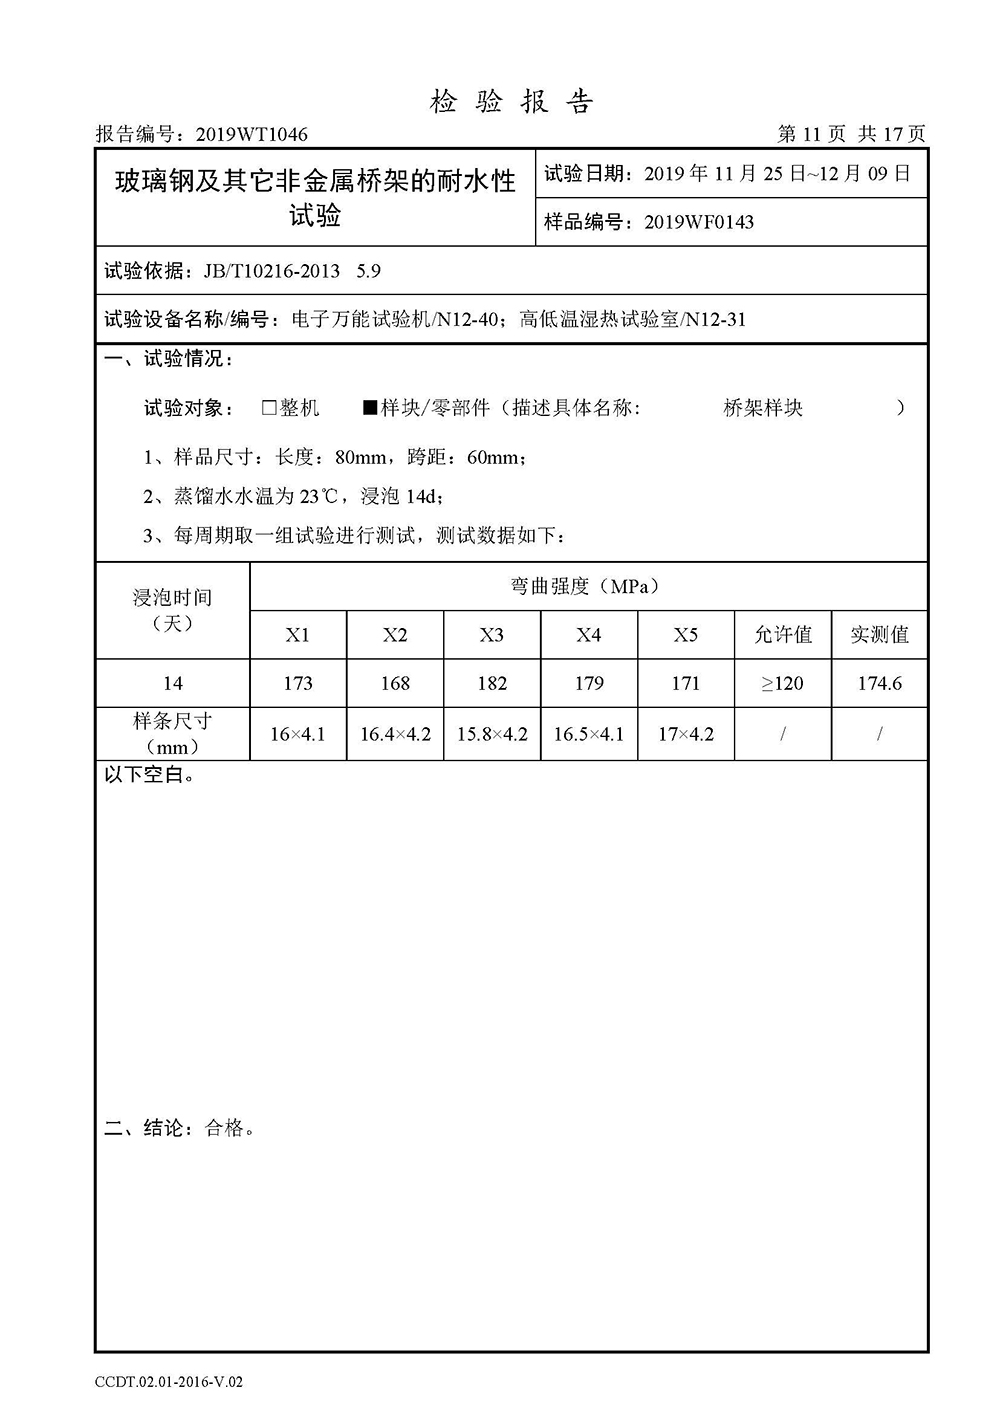 正式报告--2019WT1046-高分子合金电缆桥架-安徽天康（集团）股份有限公司(4)(1)_页面_13.jpg